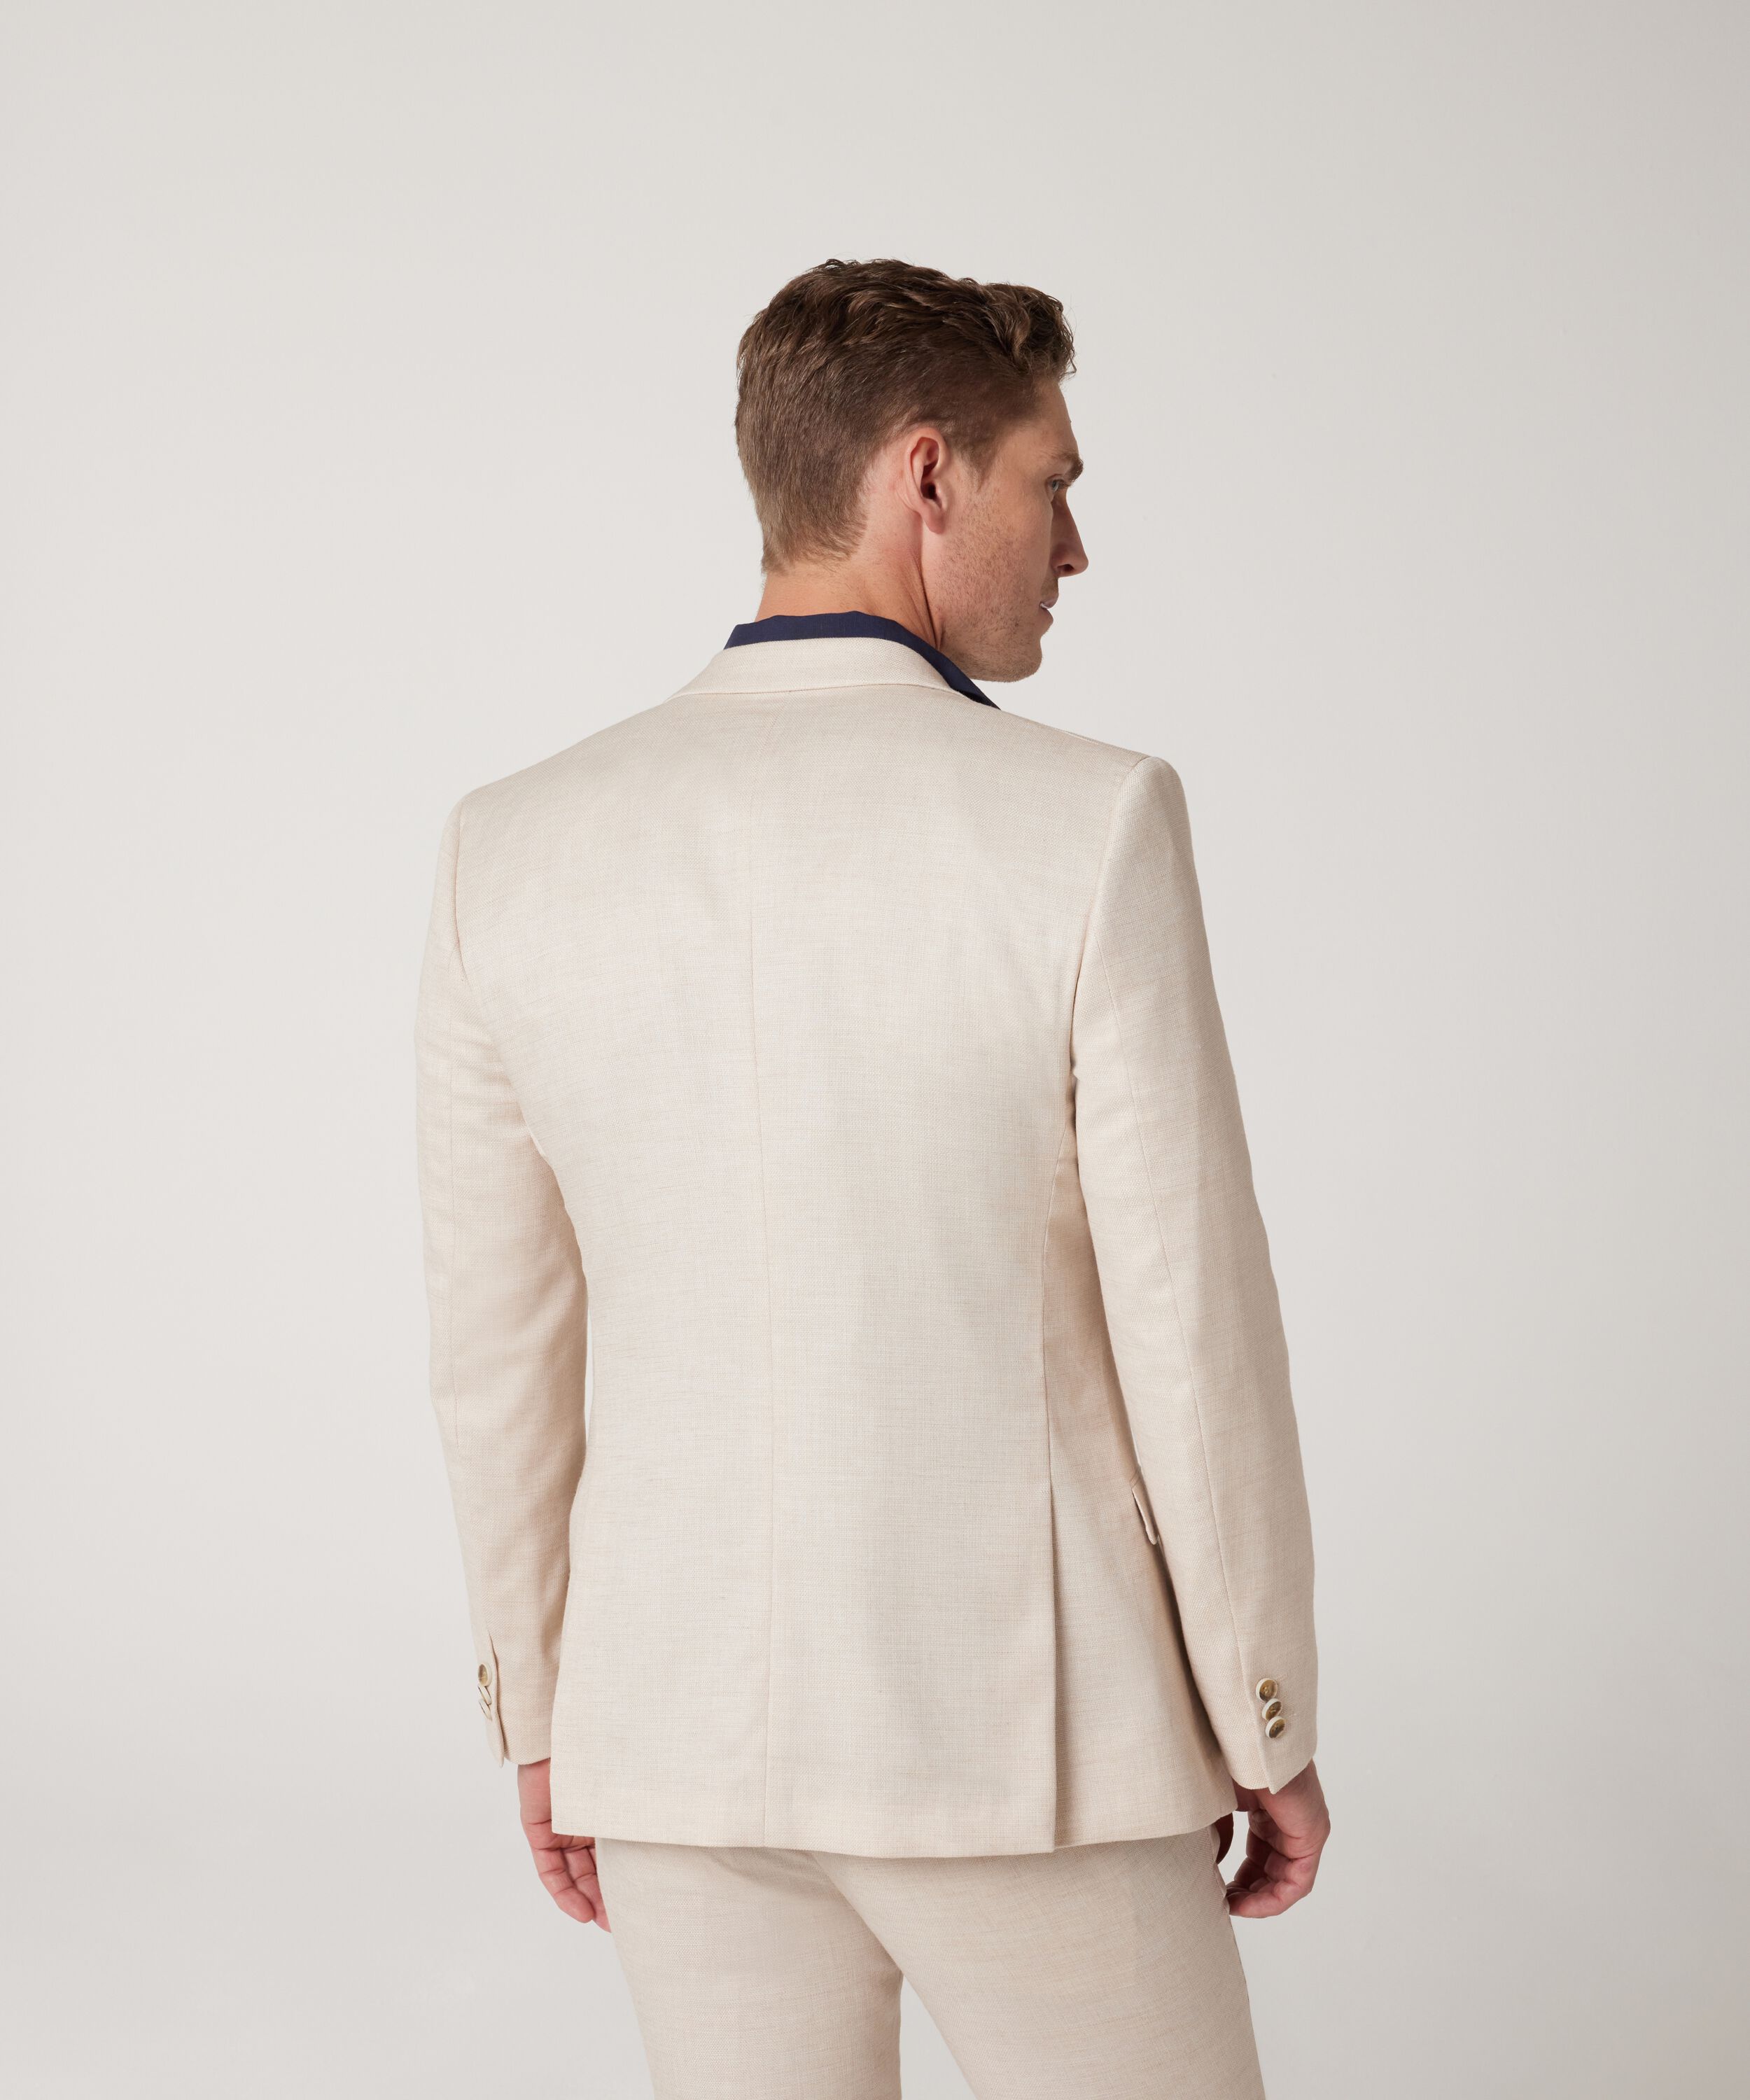 Stretch Linen Suit Vest